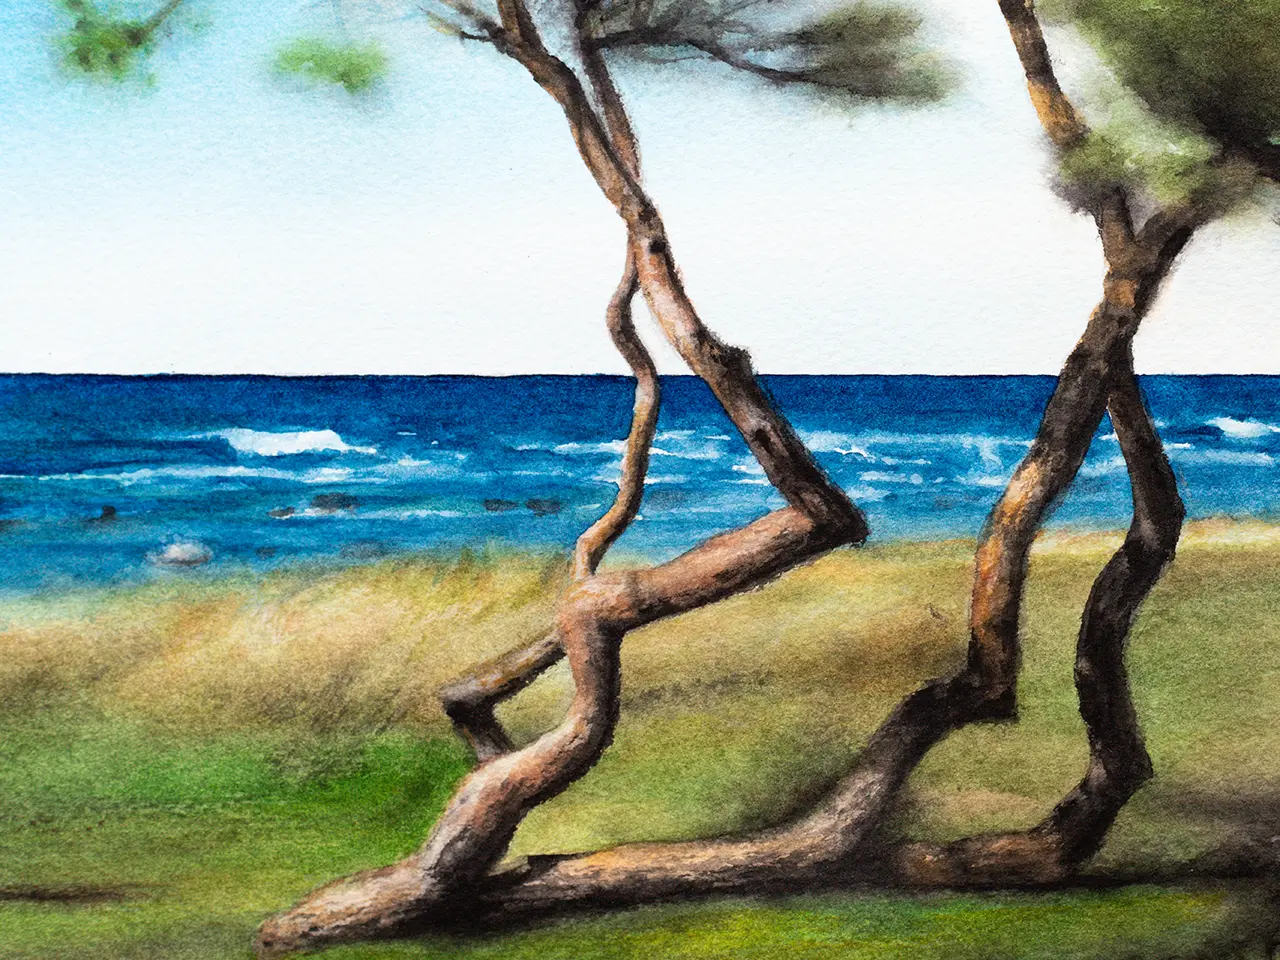 Utsnitt av beställt konstverk i akvarell av ett träd vid havet på Gotland